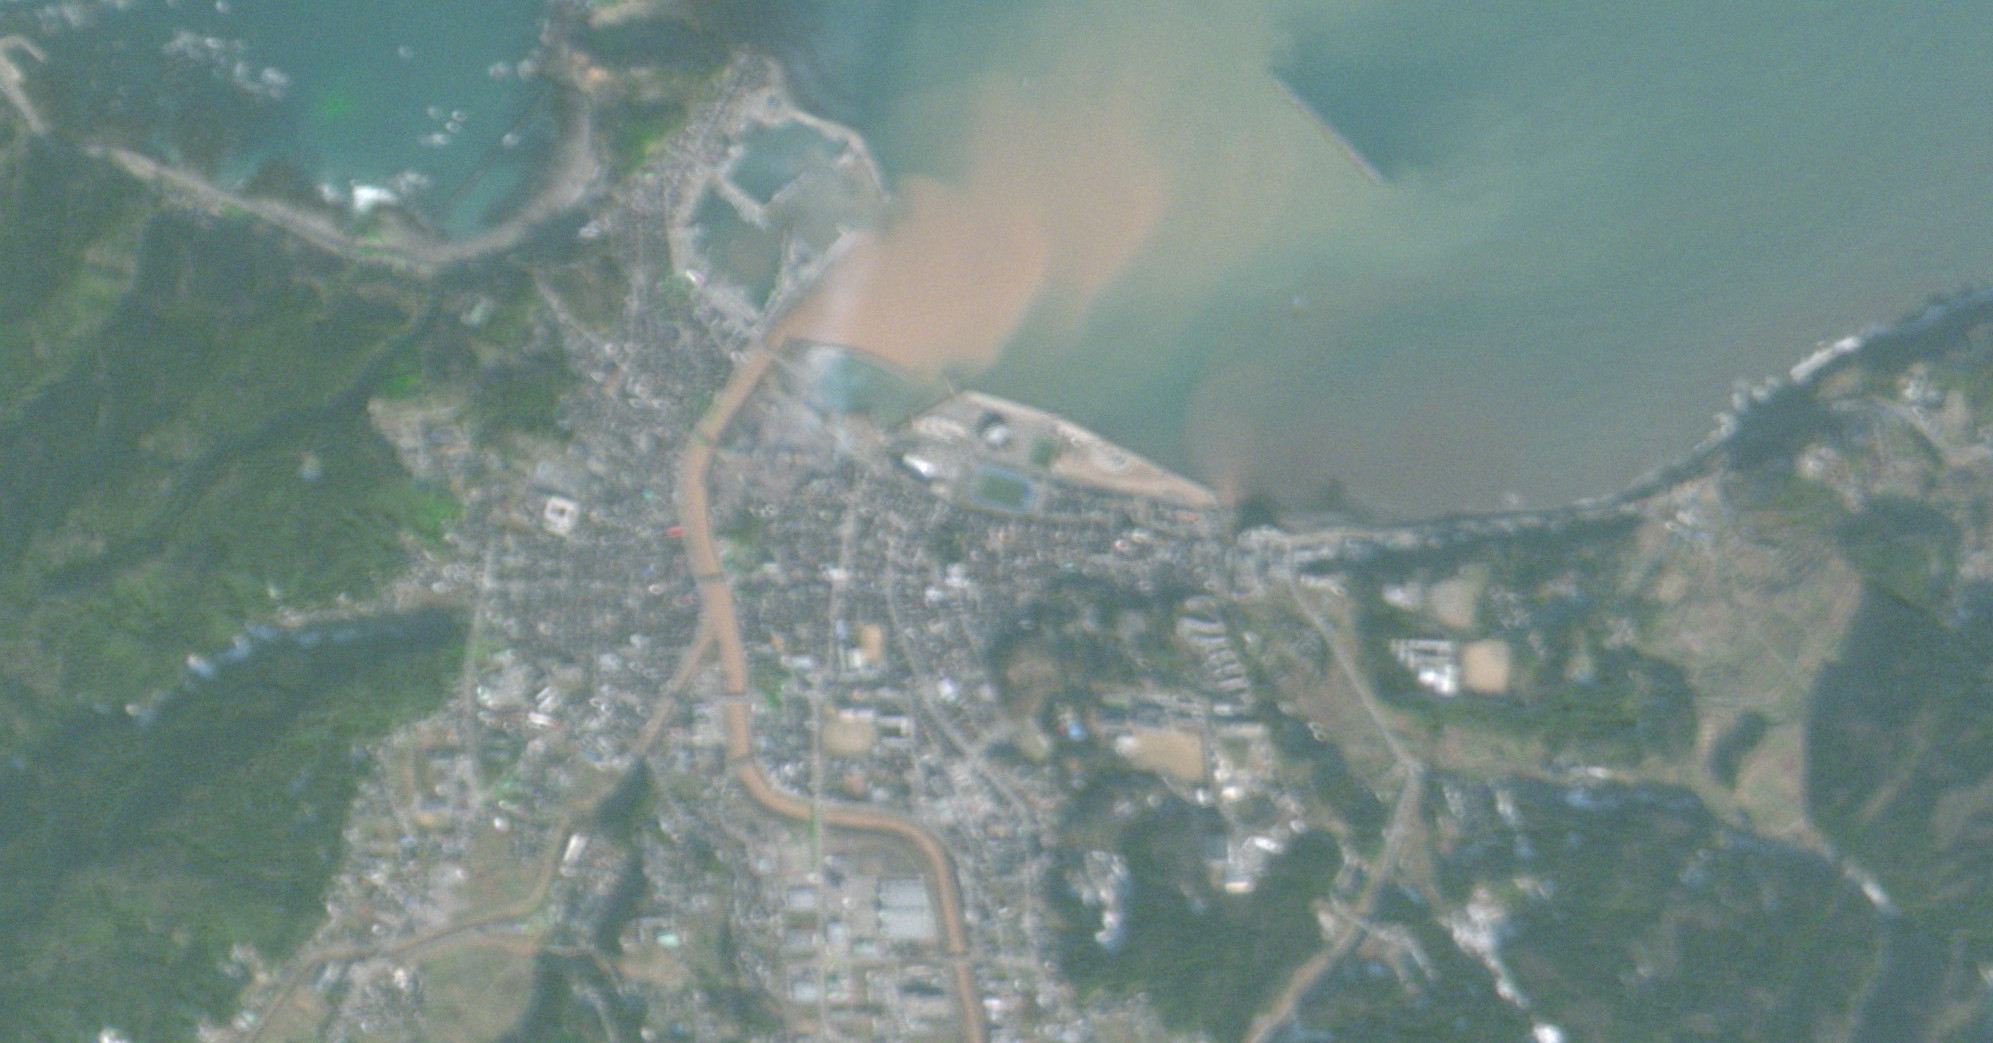 石川県輪島市や富山県高岡市などの被災後衛星画像、宇宙ベンチャーが公開